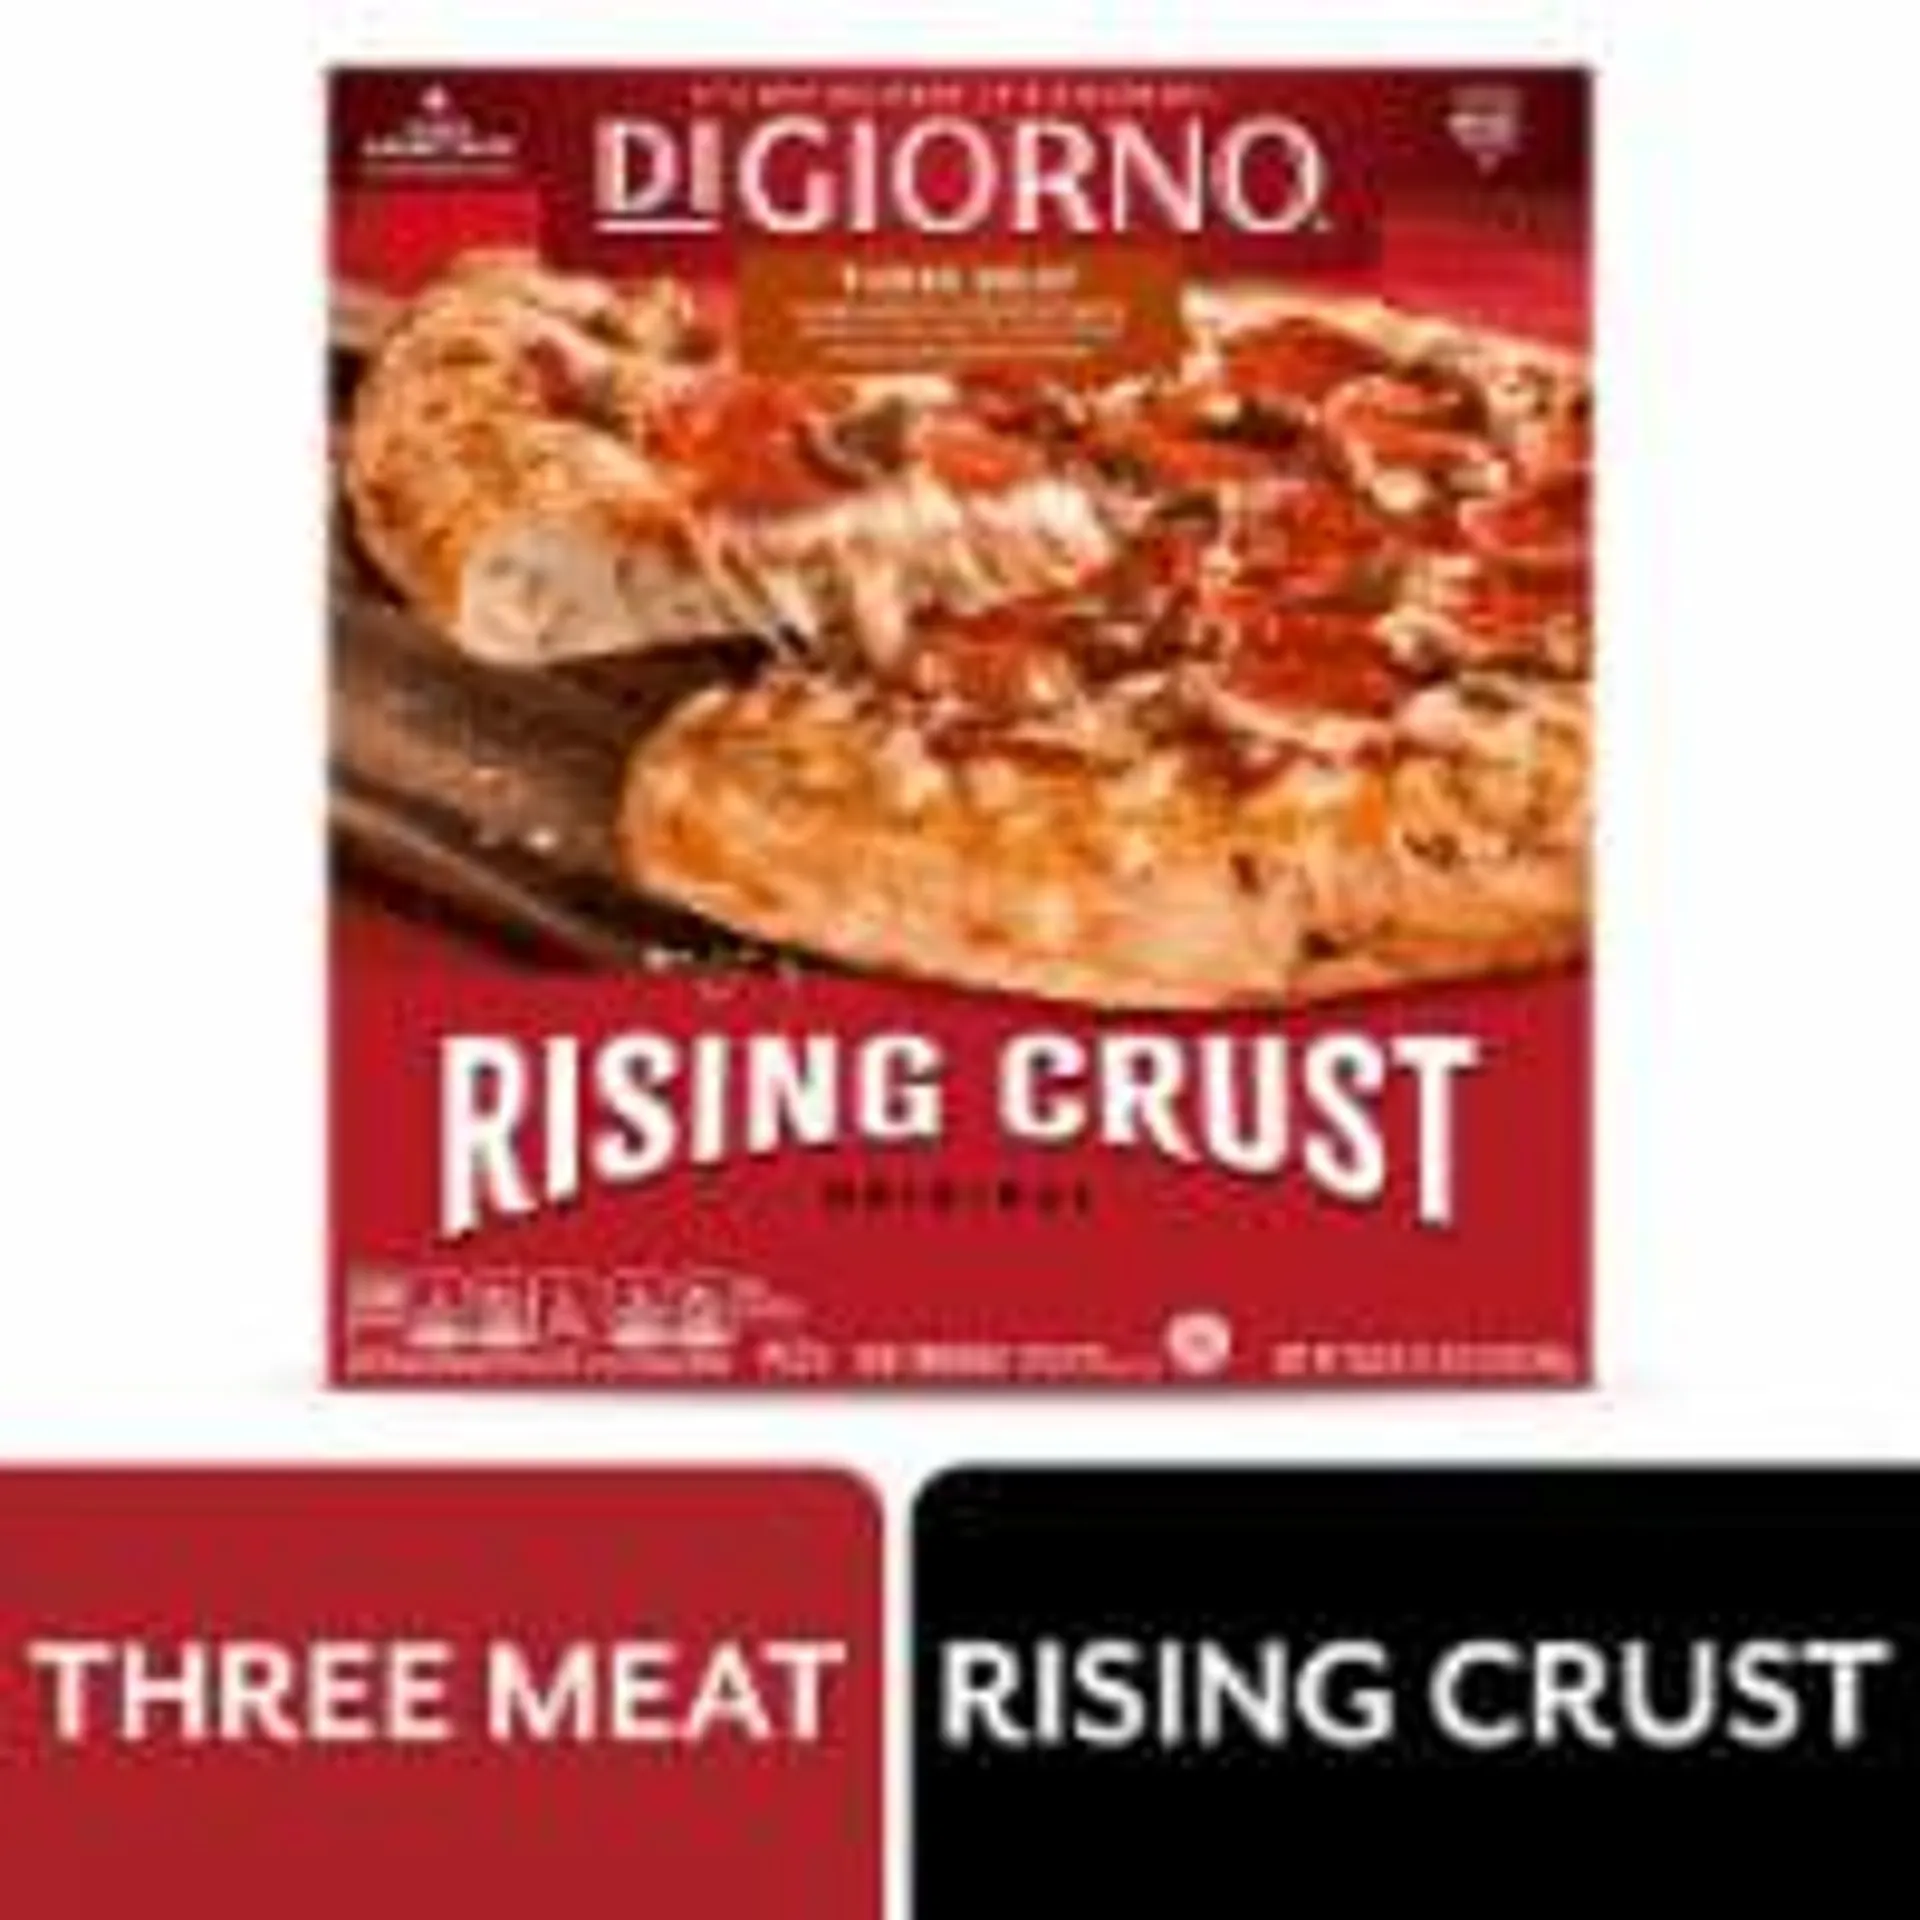 DIGIORNO® Three Meat Rising Crust Frozen Pizza